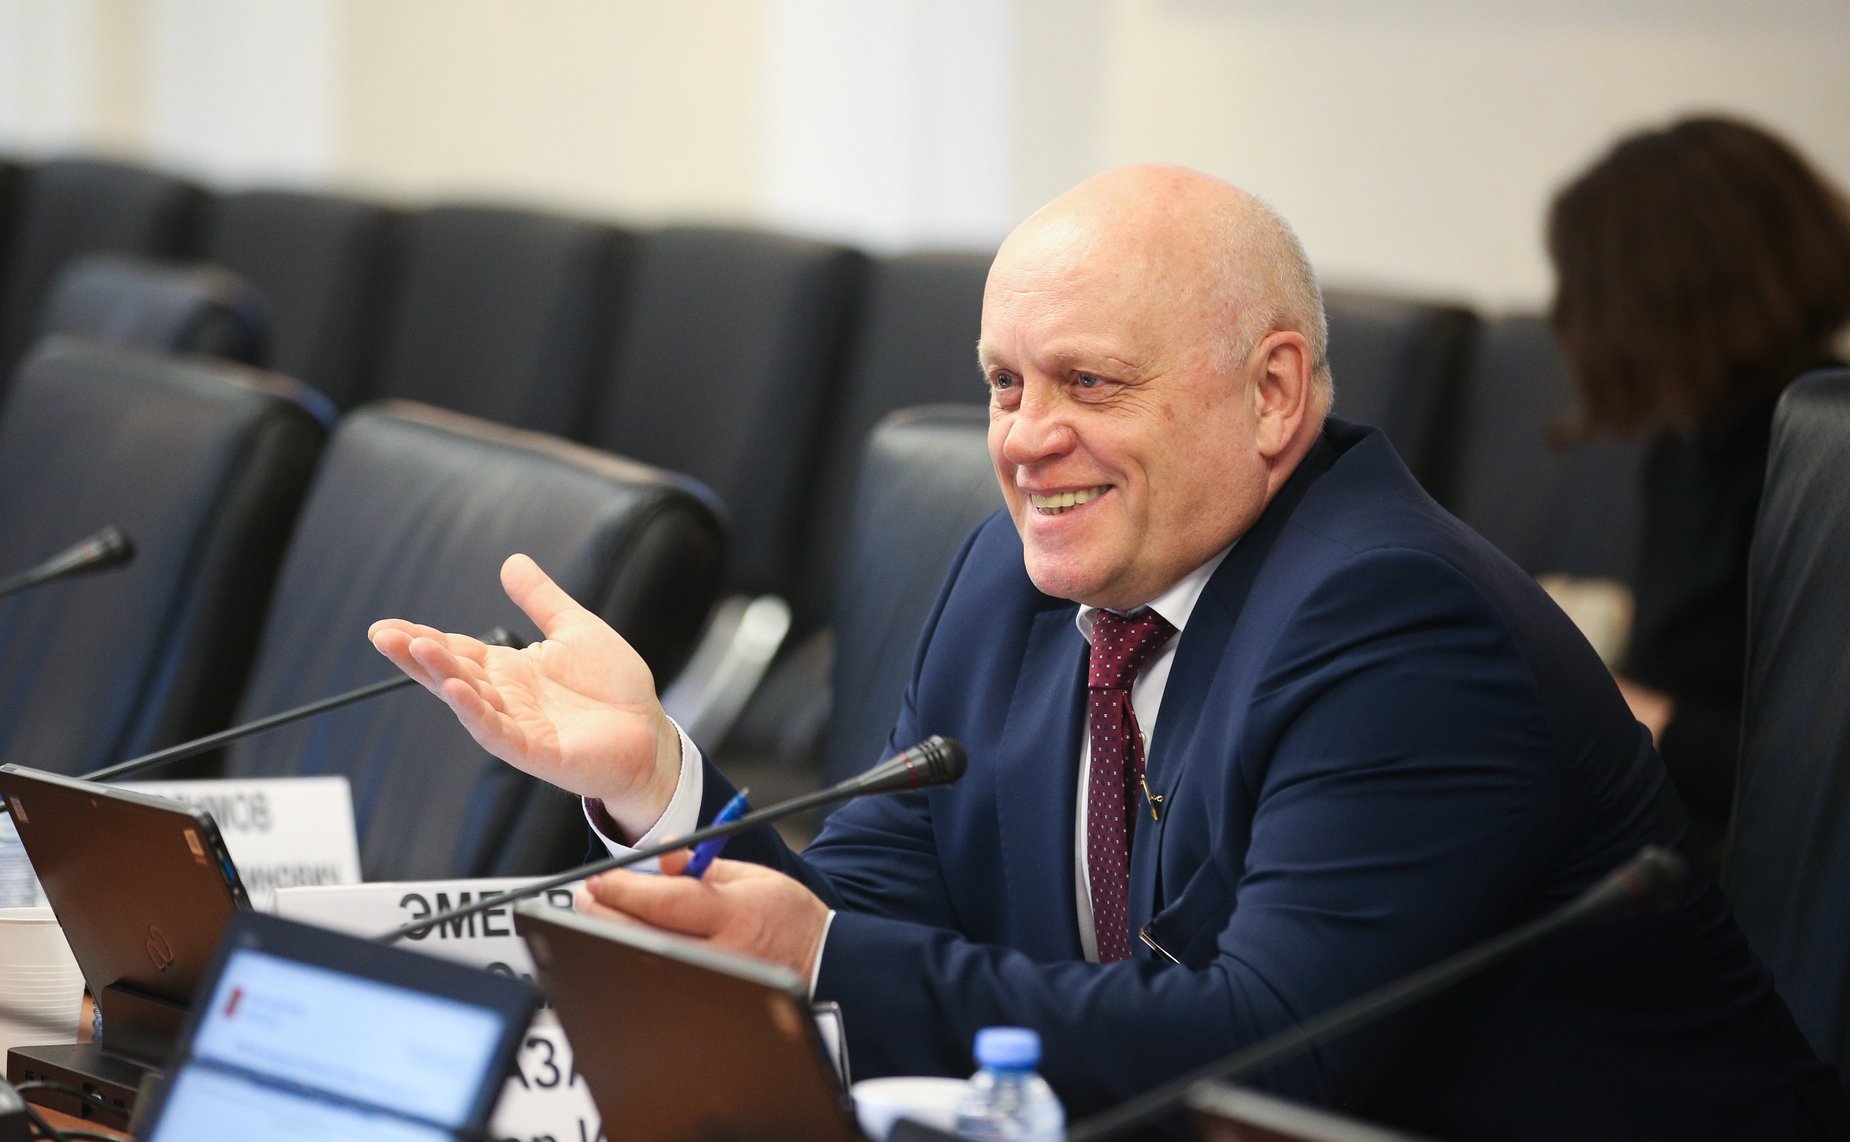 Экс-губернатор Омской области Виктор Назаров в Совфеде заработал 6,3 миллиона